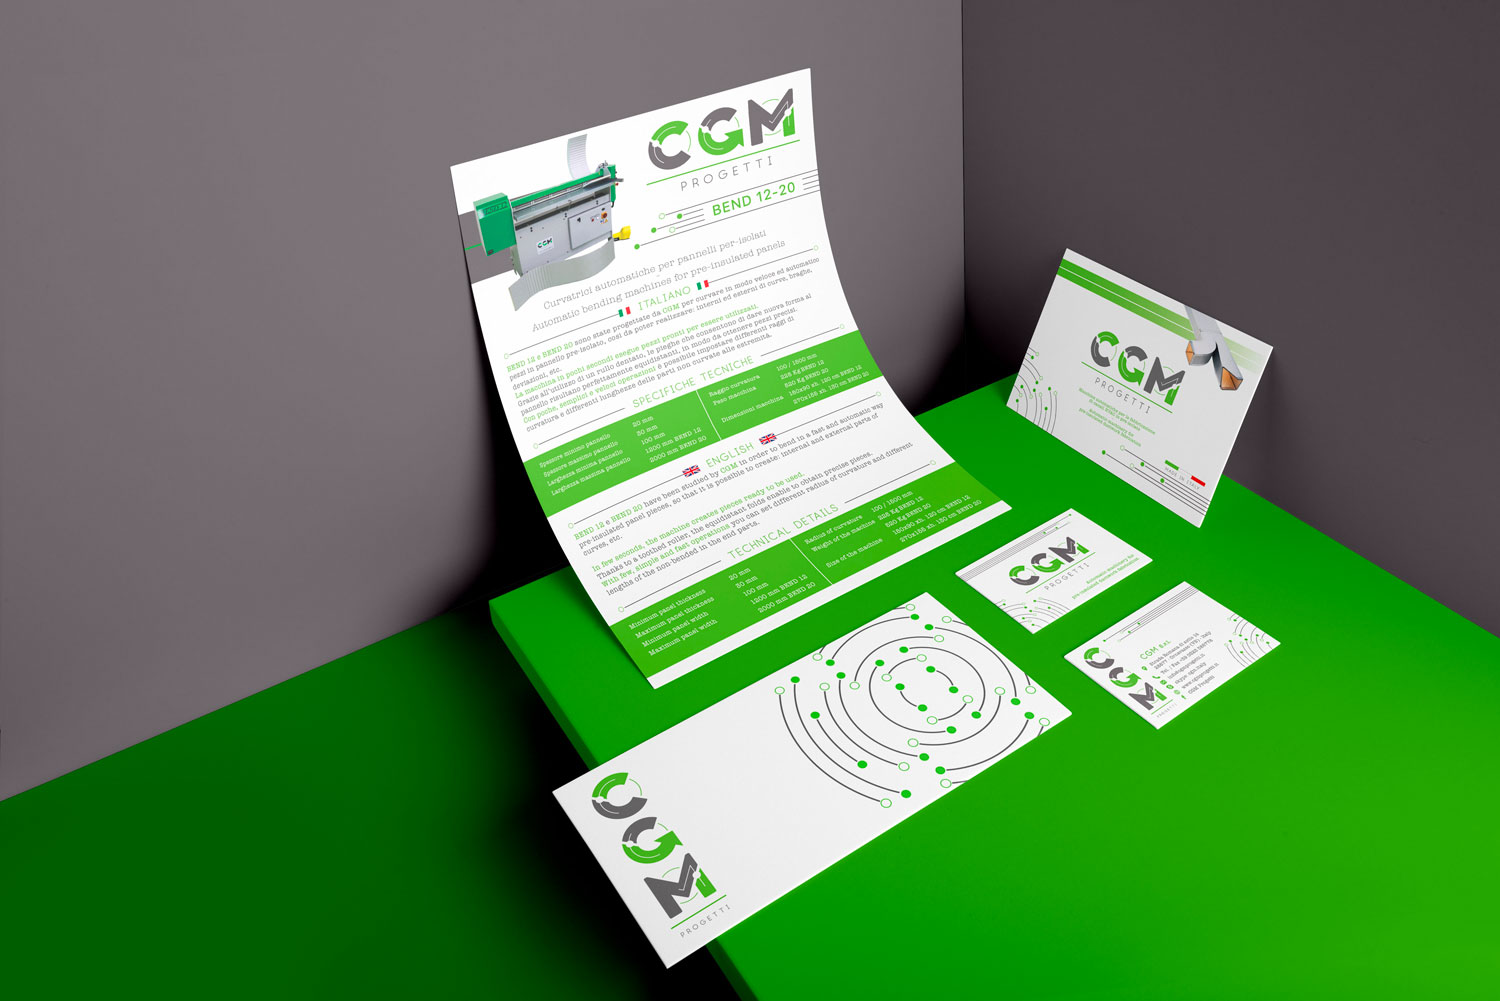 Logo e brand identity di CGM Progetti realizzato da SEBA! grafico di Gravellona Toce nel VCO di carta intestata, busta da lettere e portfolio